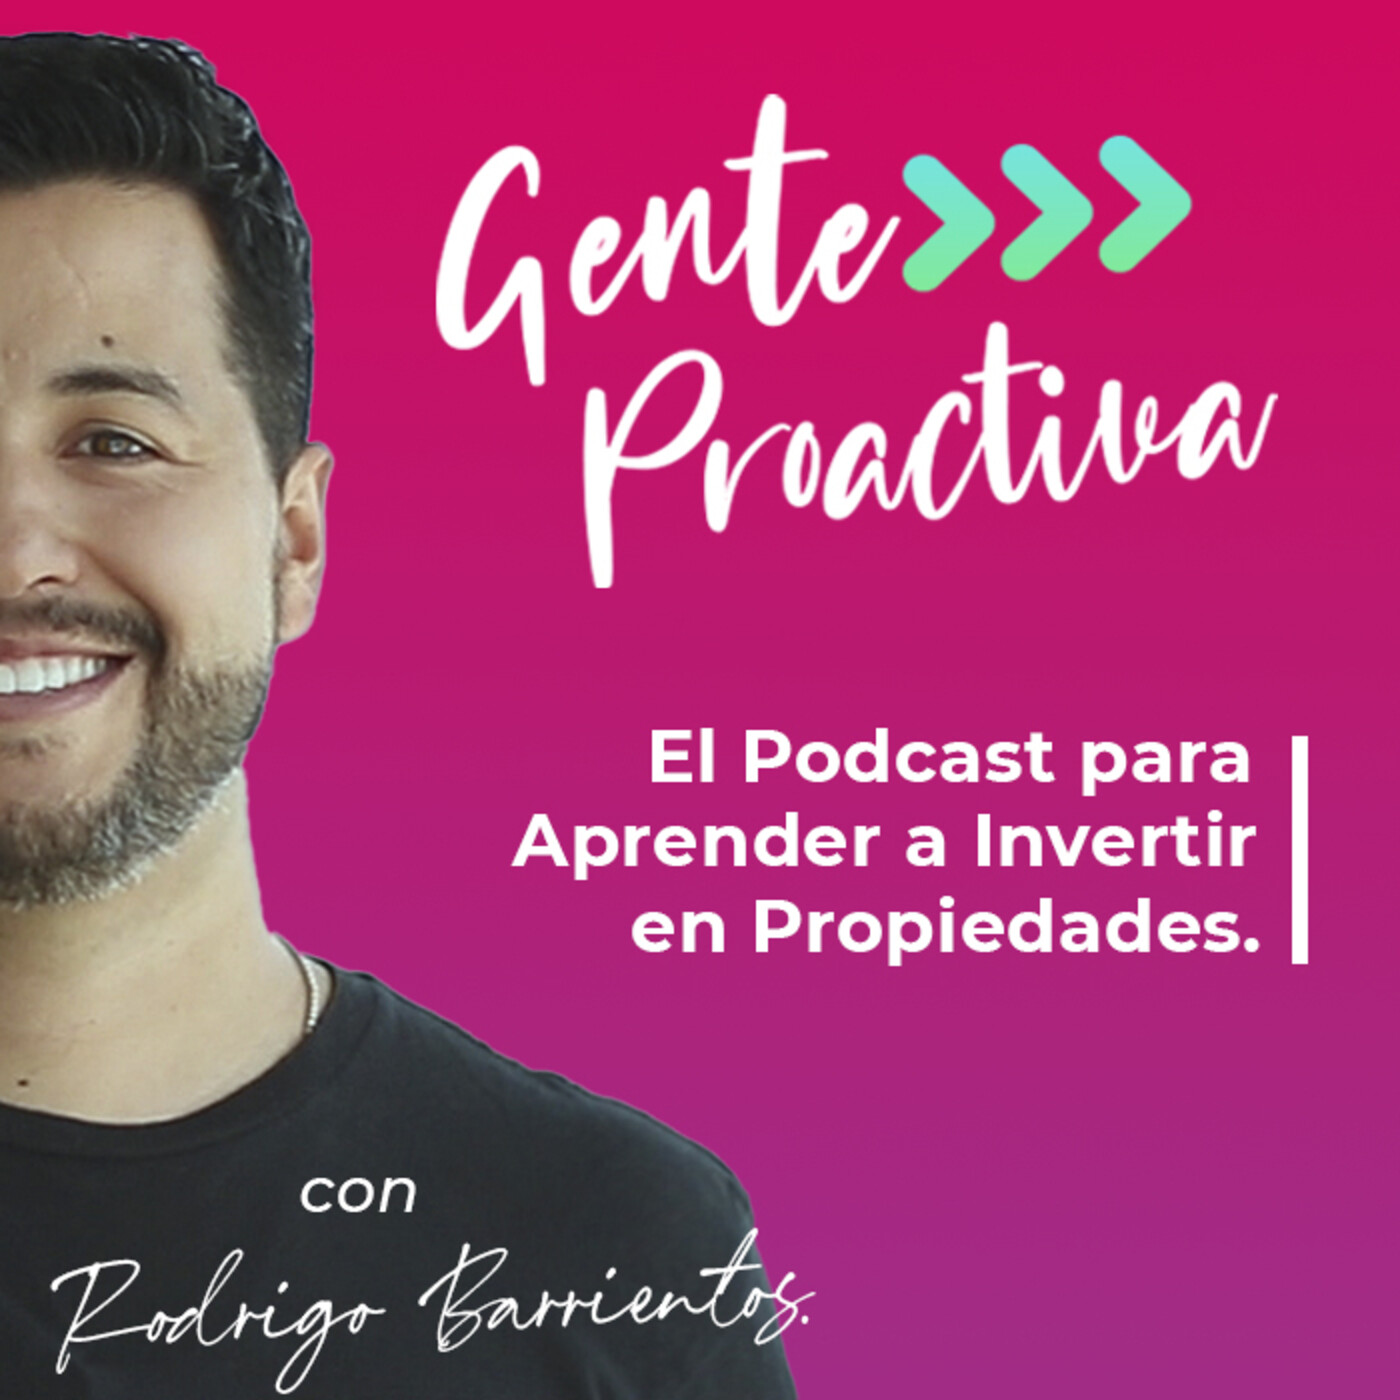 Gente Proactiva - Con Rodrigo Barrientos